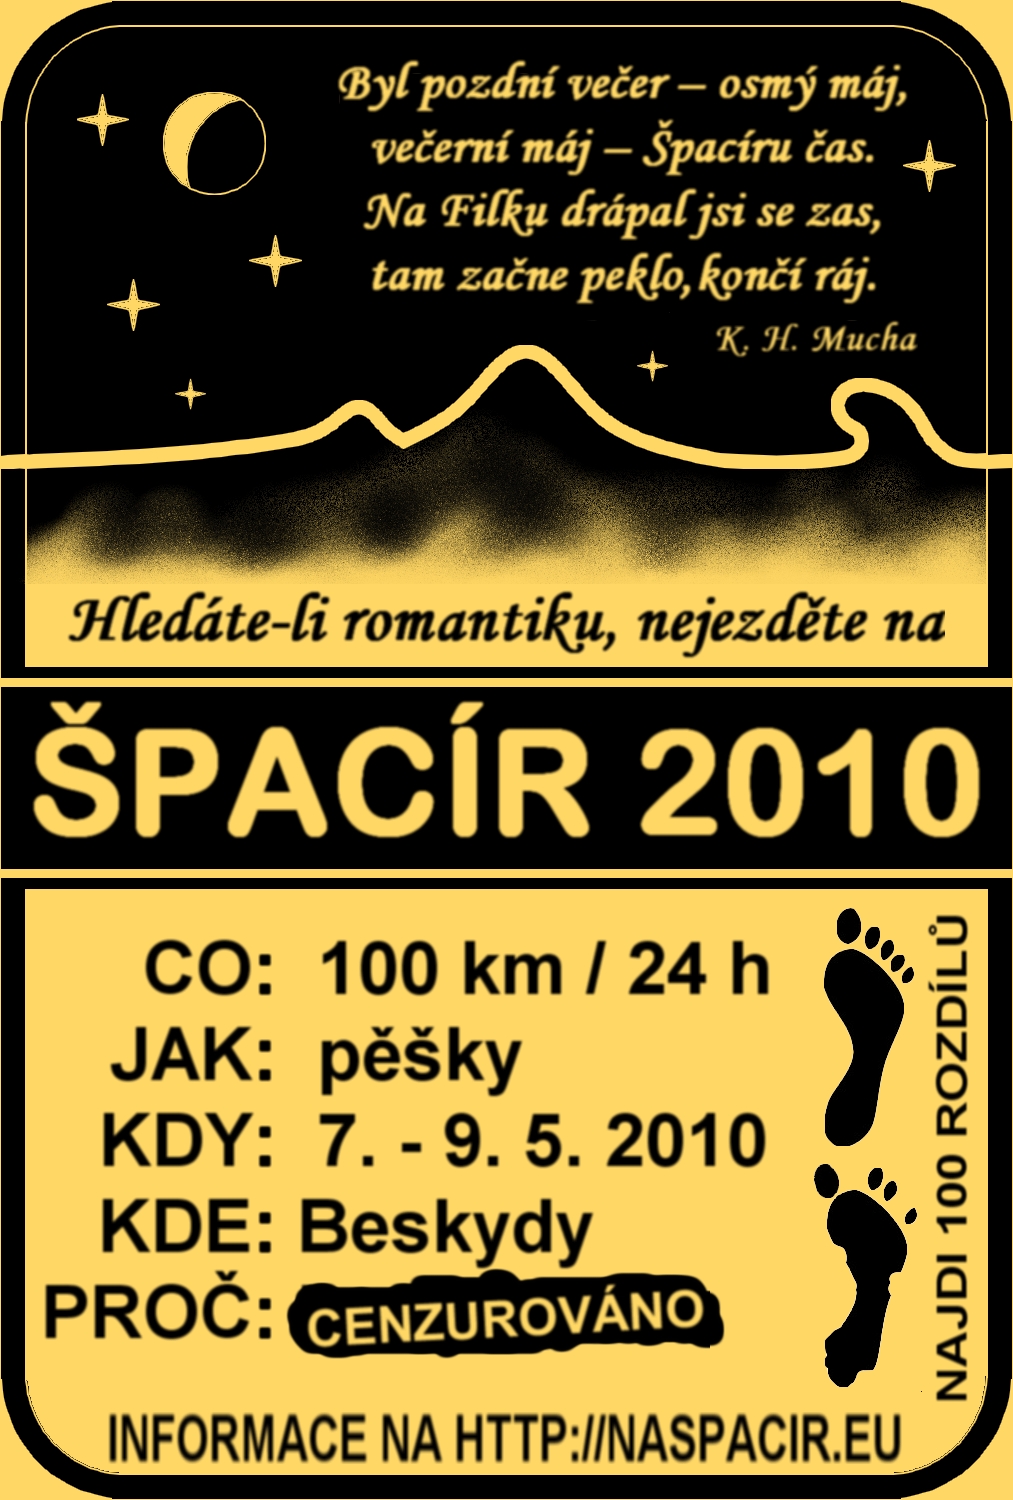 Špacír 2010 – 100 km / 24 h